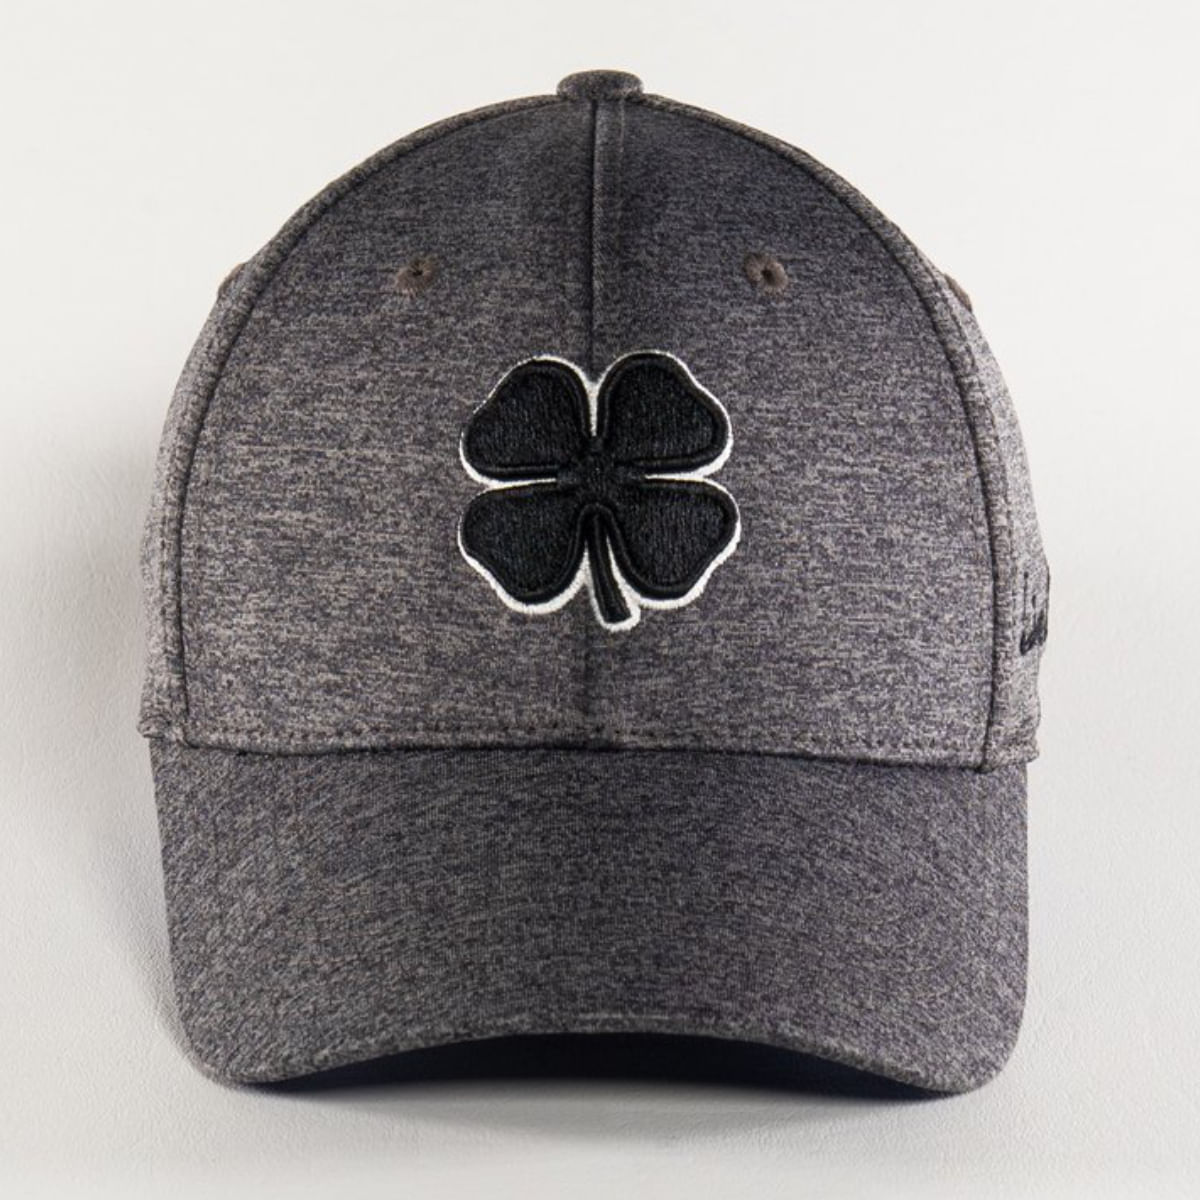 Black Clover Lucky Heather Golf Hat - Als.com